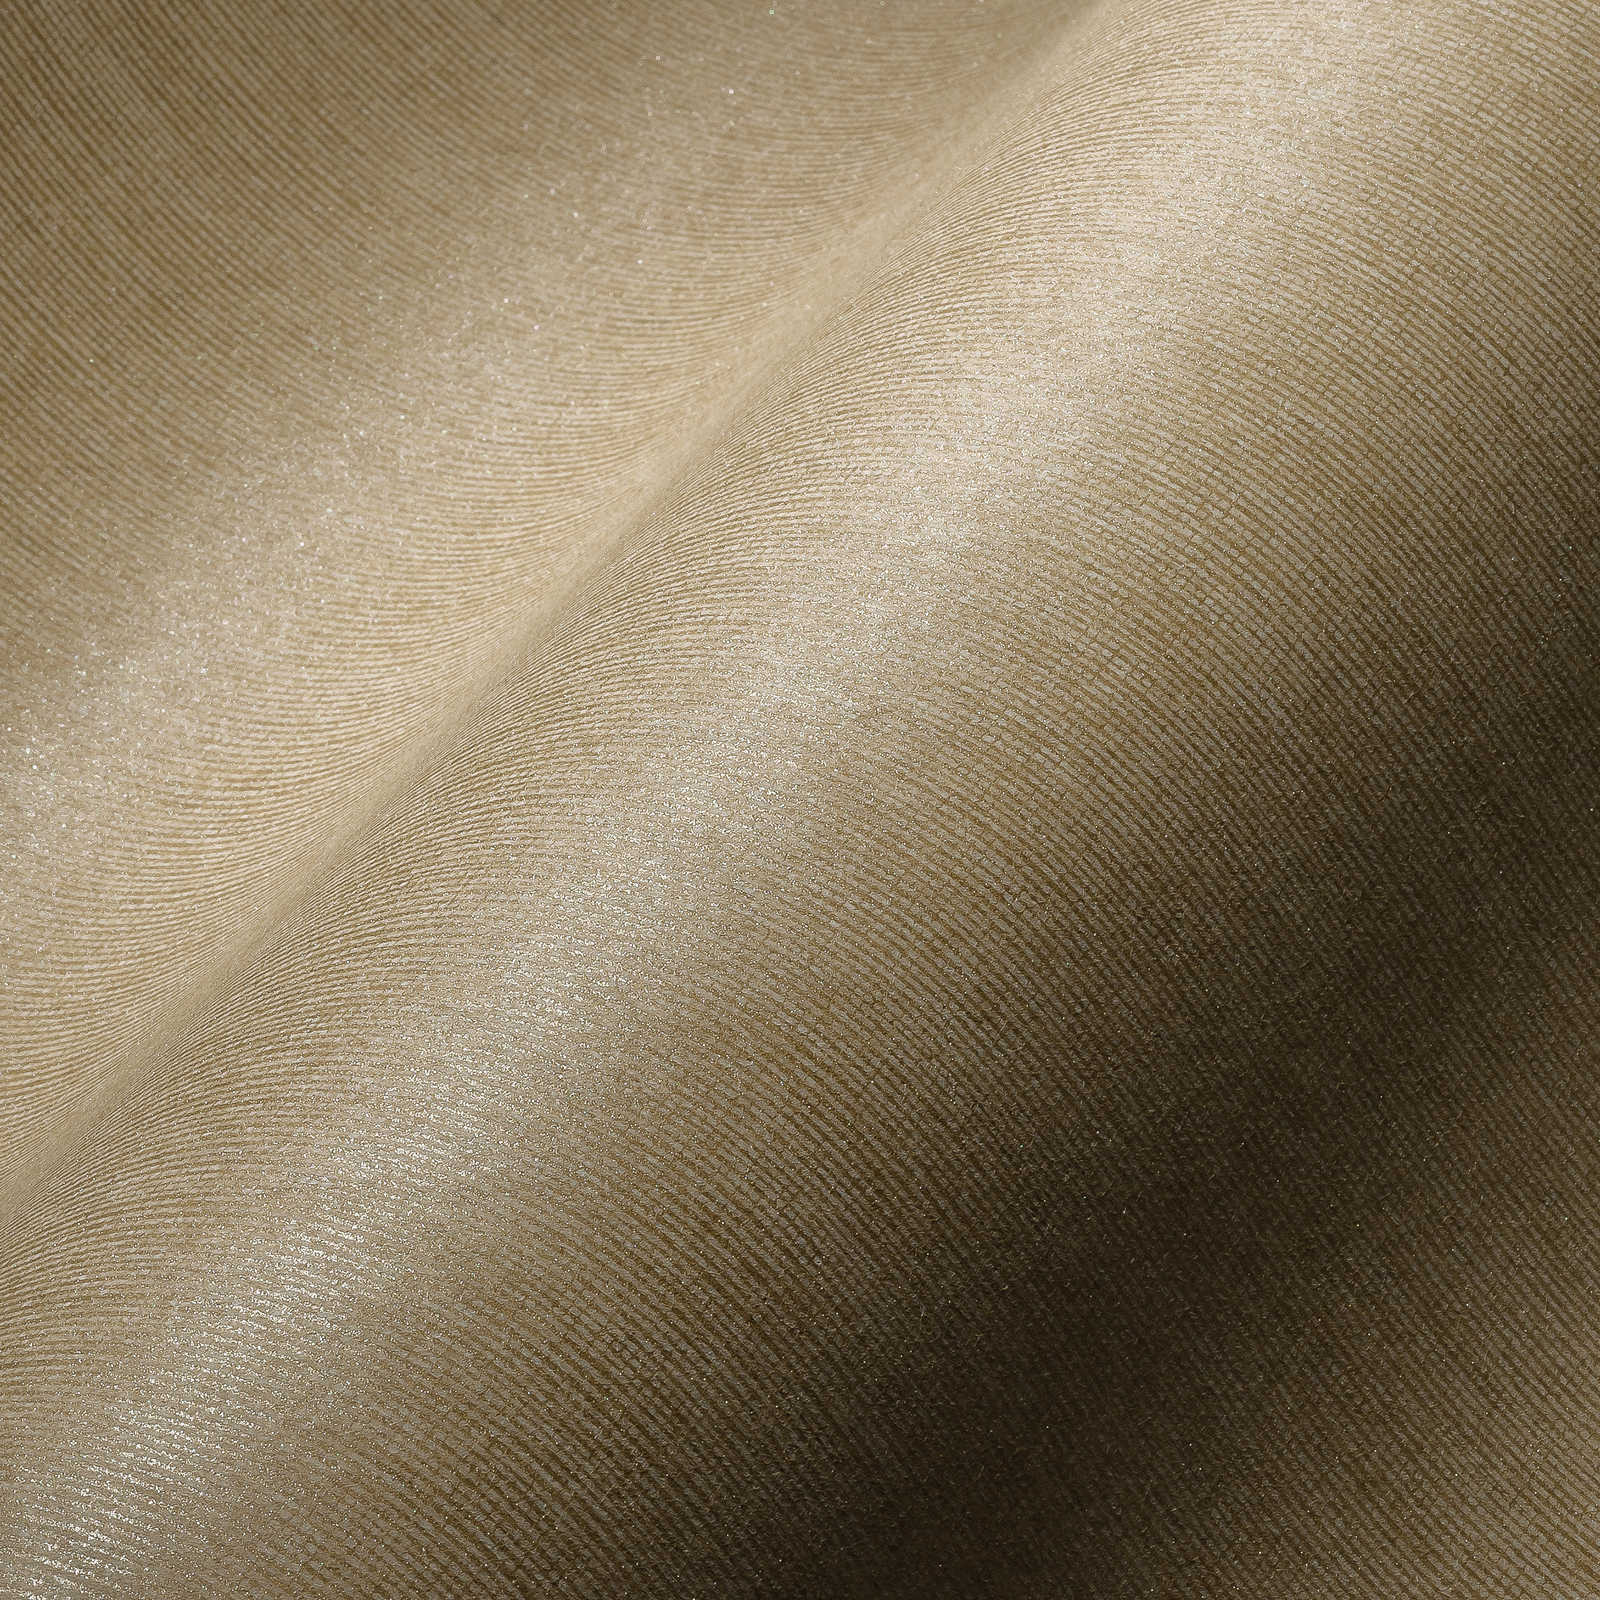             Beige Tapete mit Textiloptik & goldenem Schimmer Effekt – Gold, Beige
        